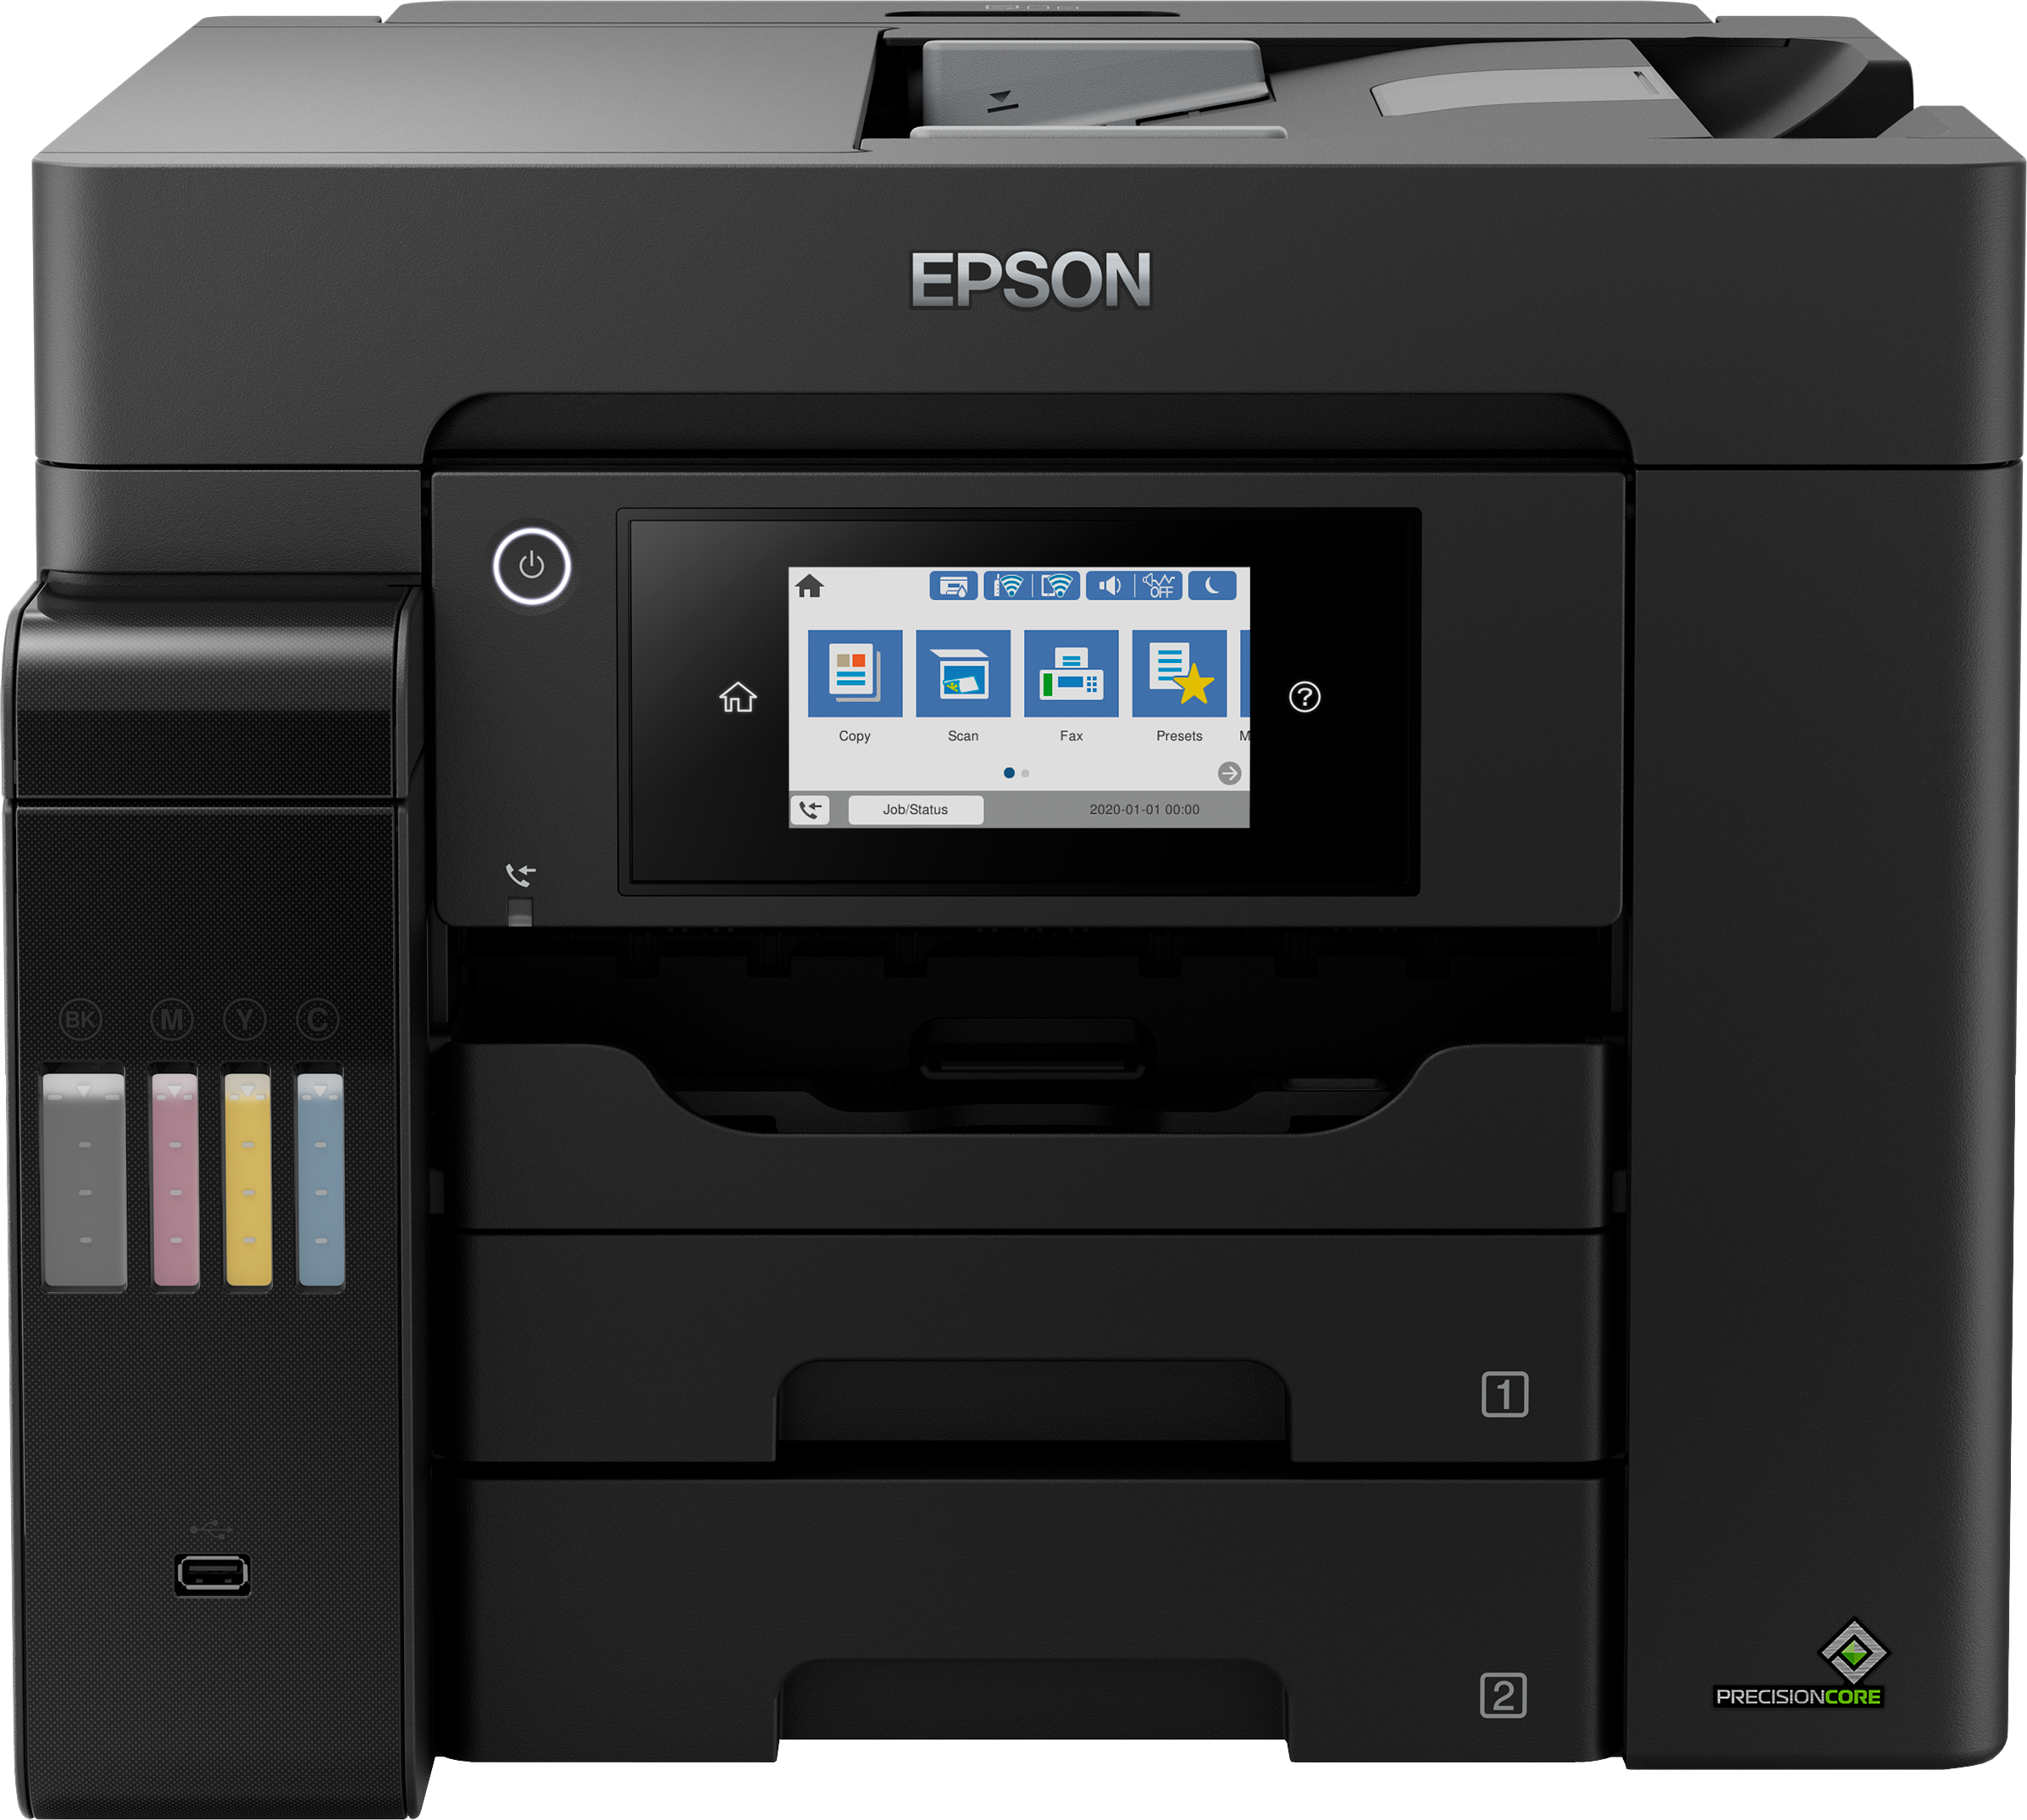 Bouteille d'encre pour Imprimante Epson EcoTank L6570